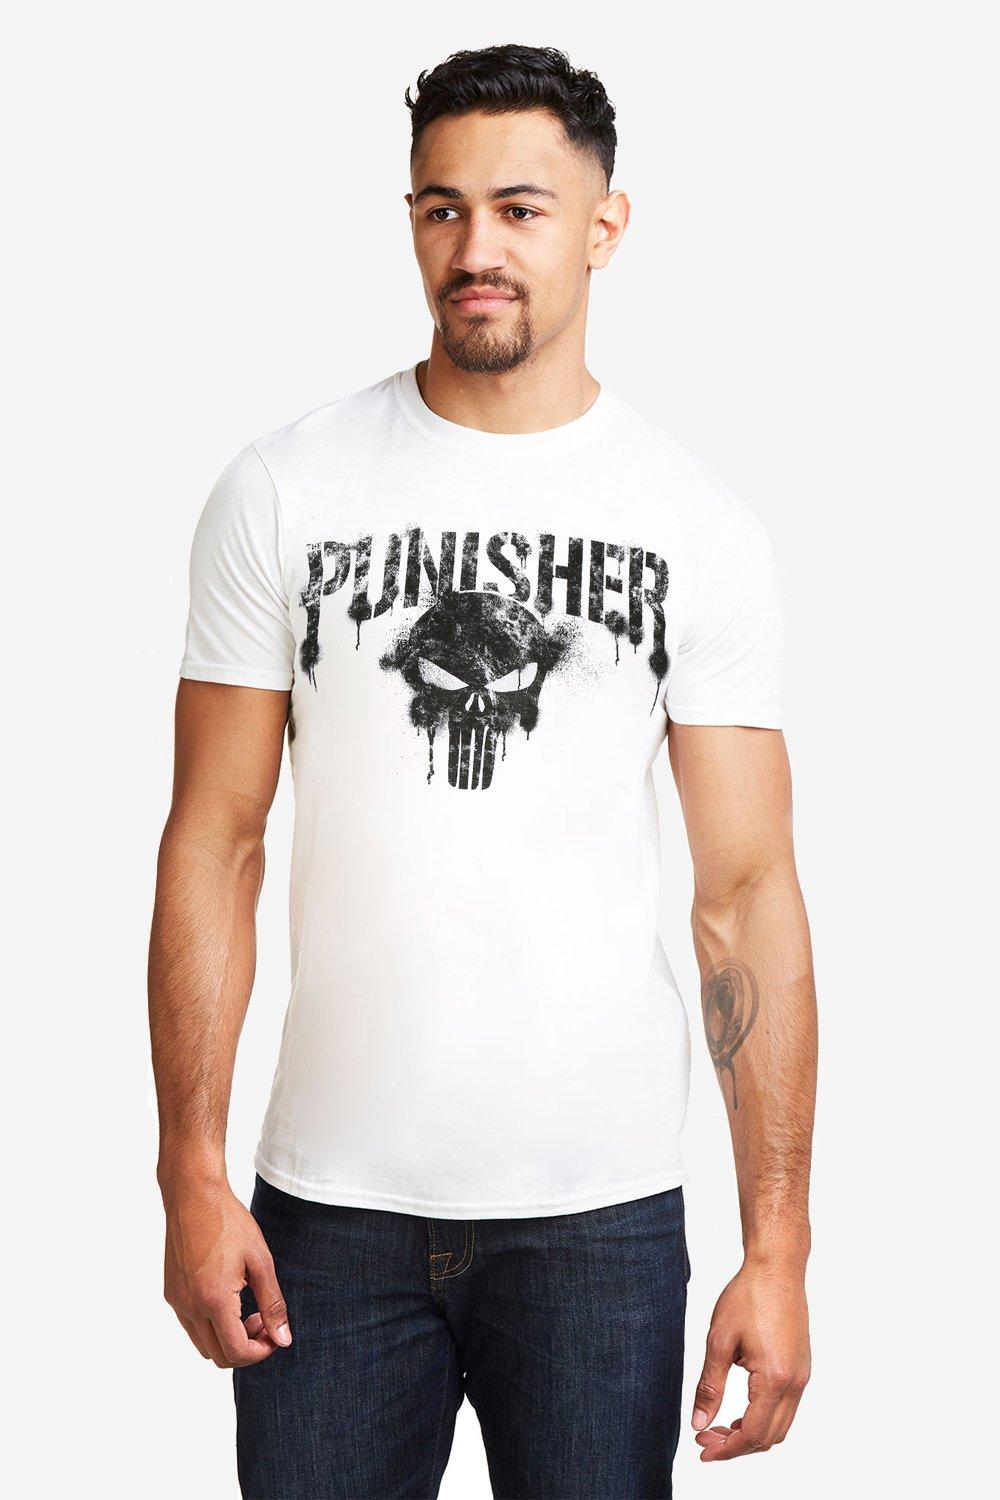 Мужская футболка Punisher с текстом Marvel, белый футболка мужская marvel punisher s